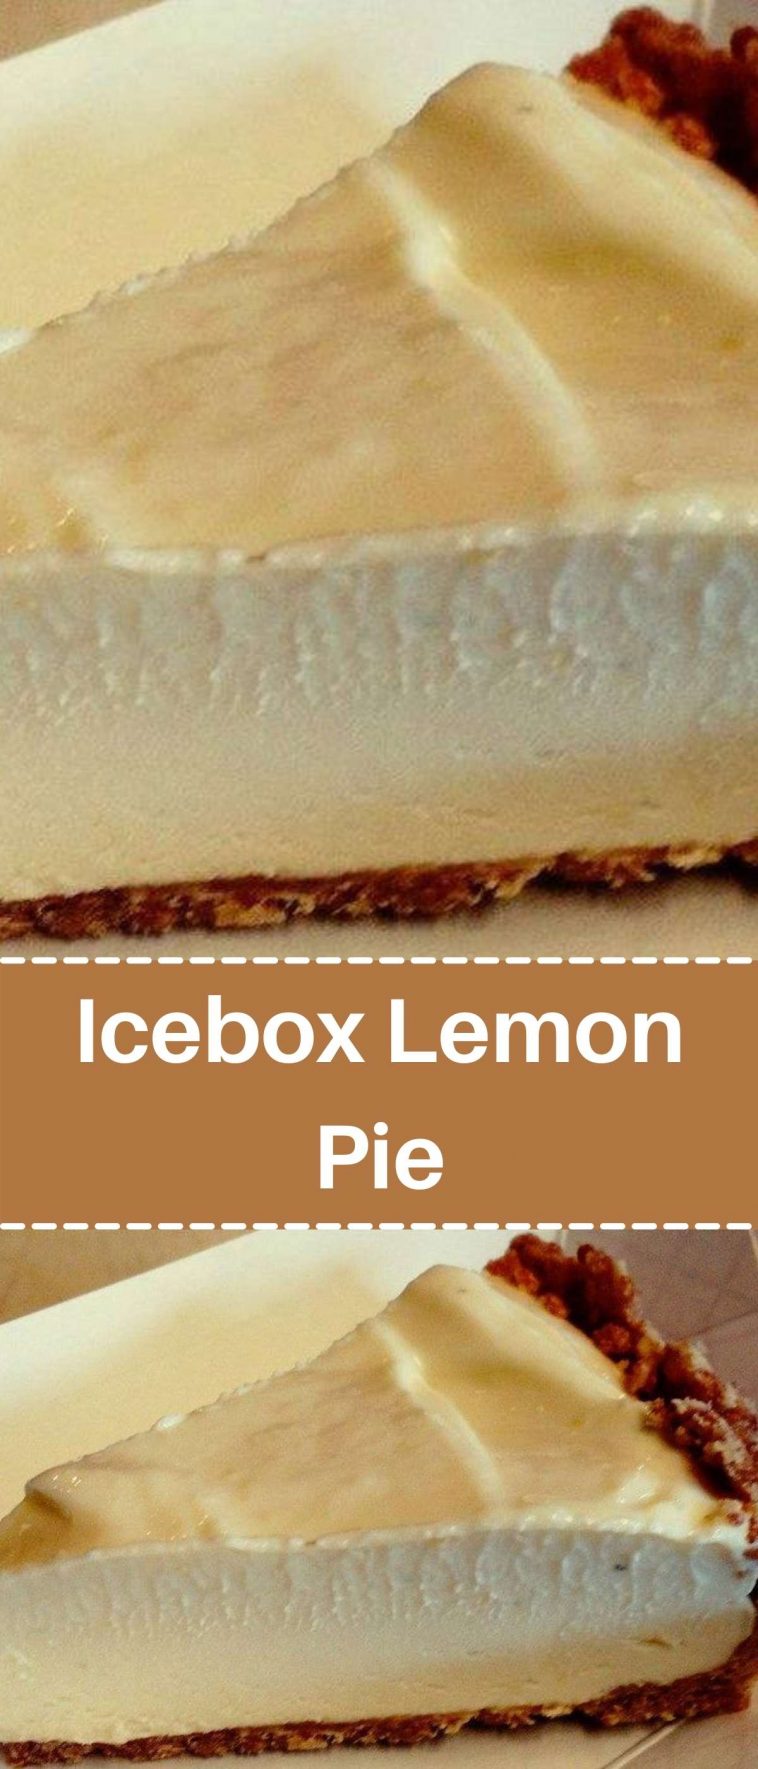 Icebox Lemon Pie